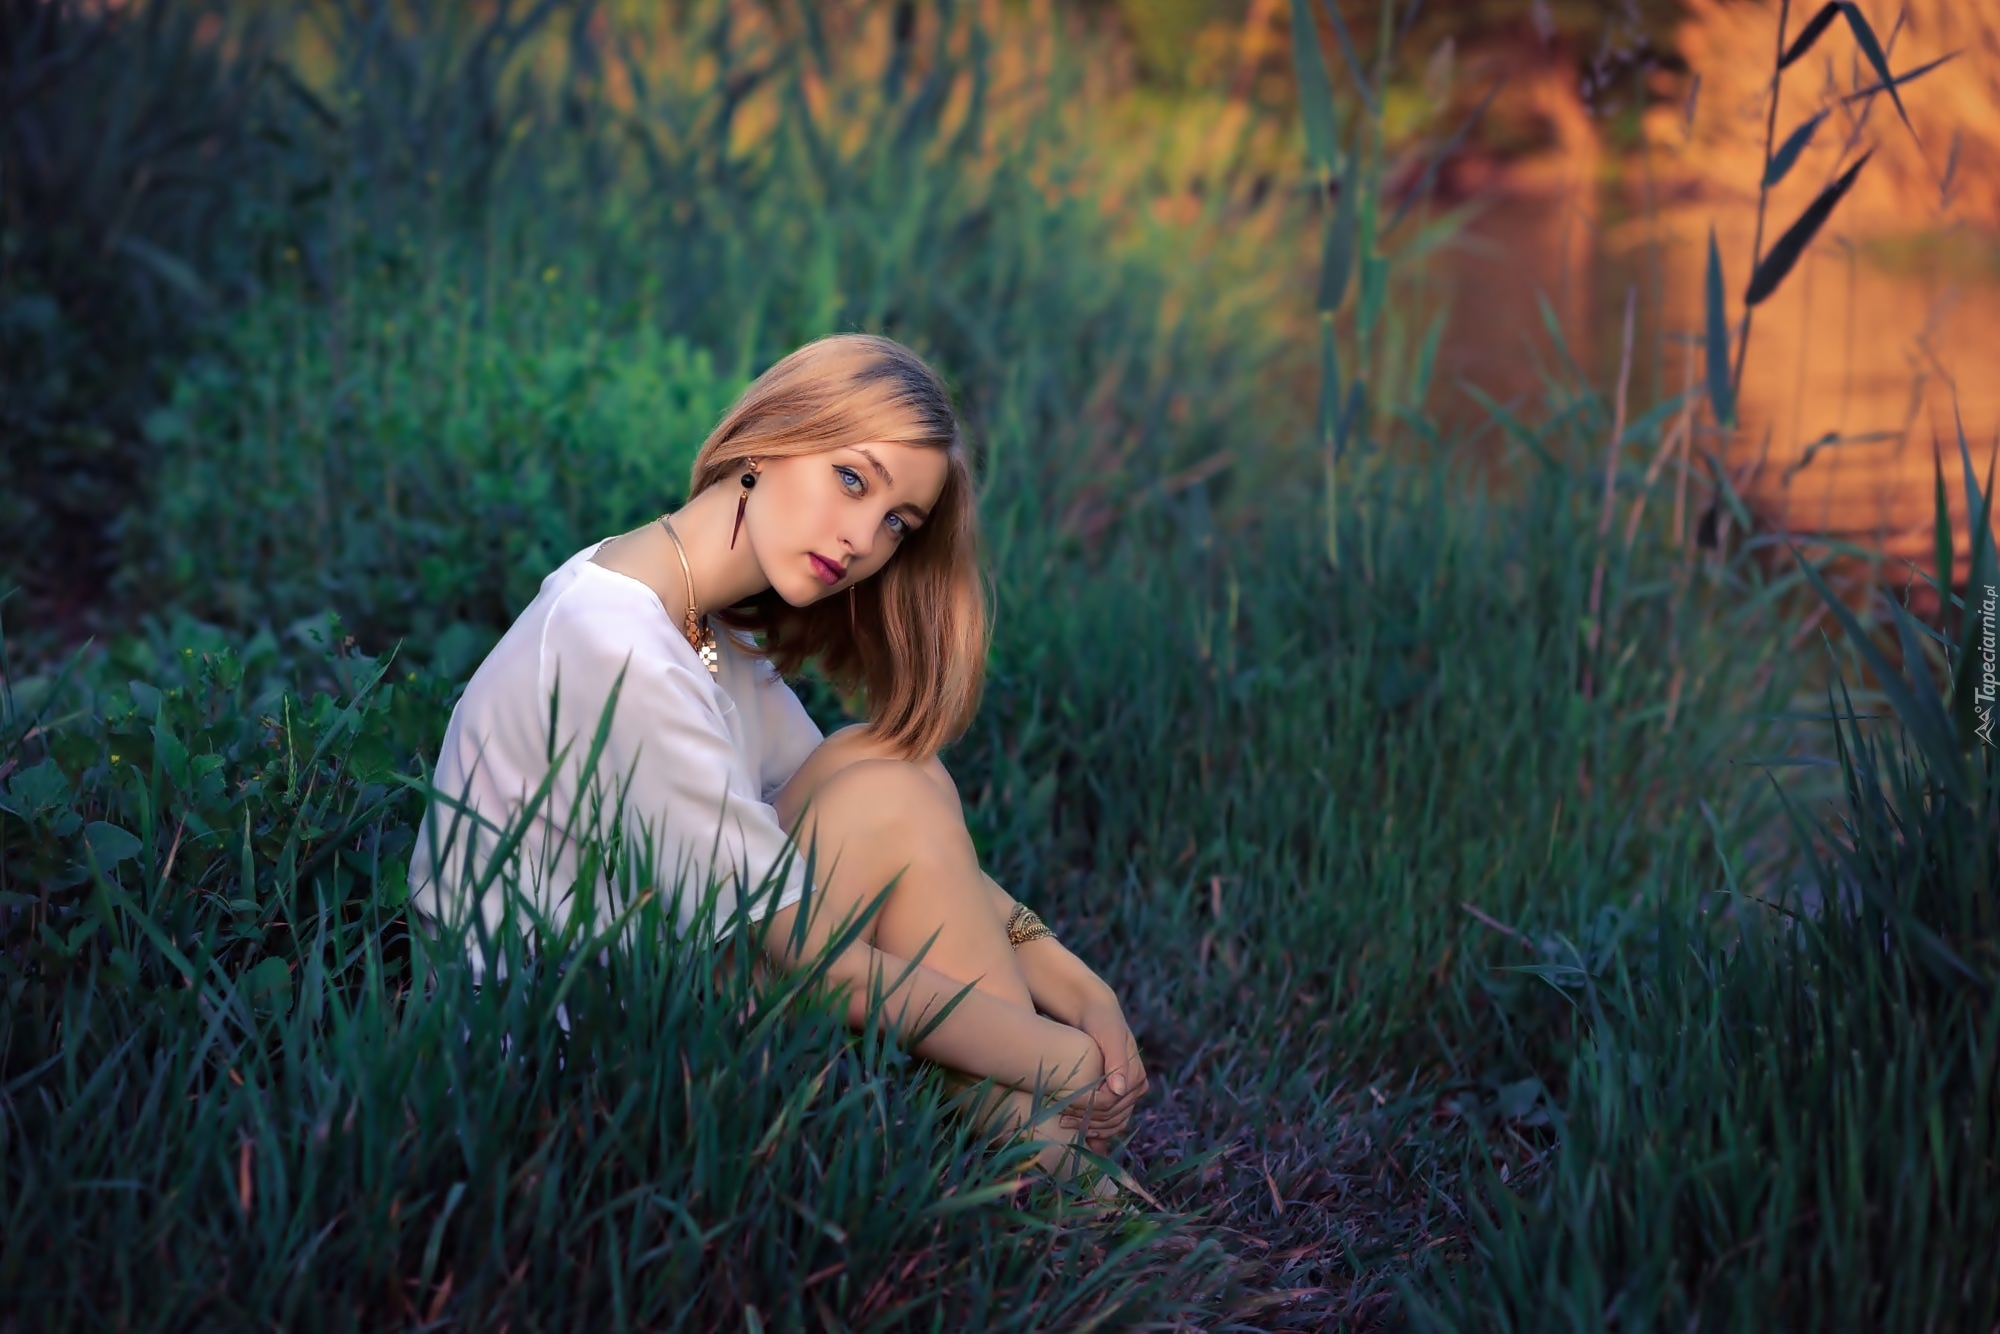 Фото на траве девушки сидя